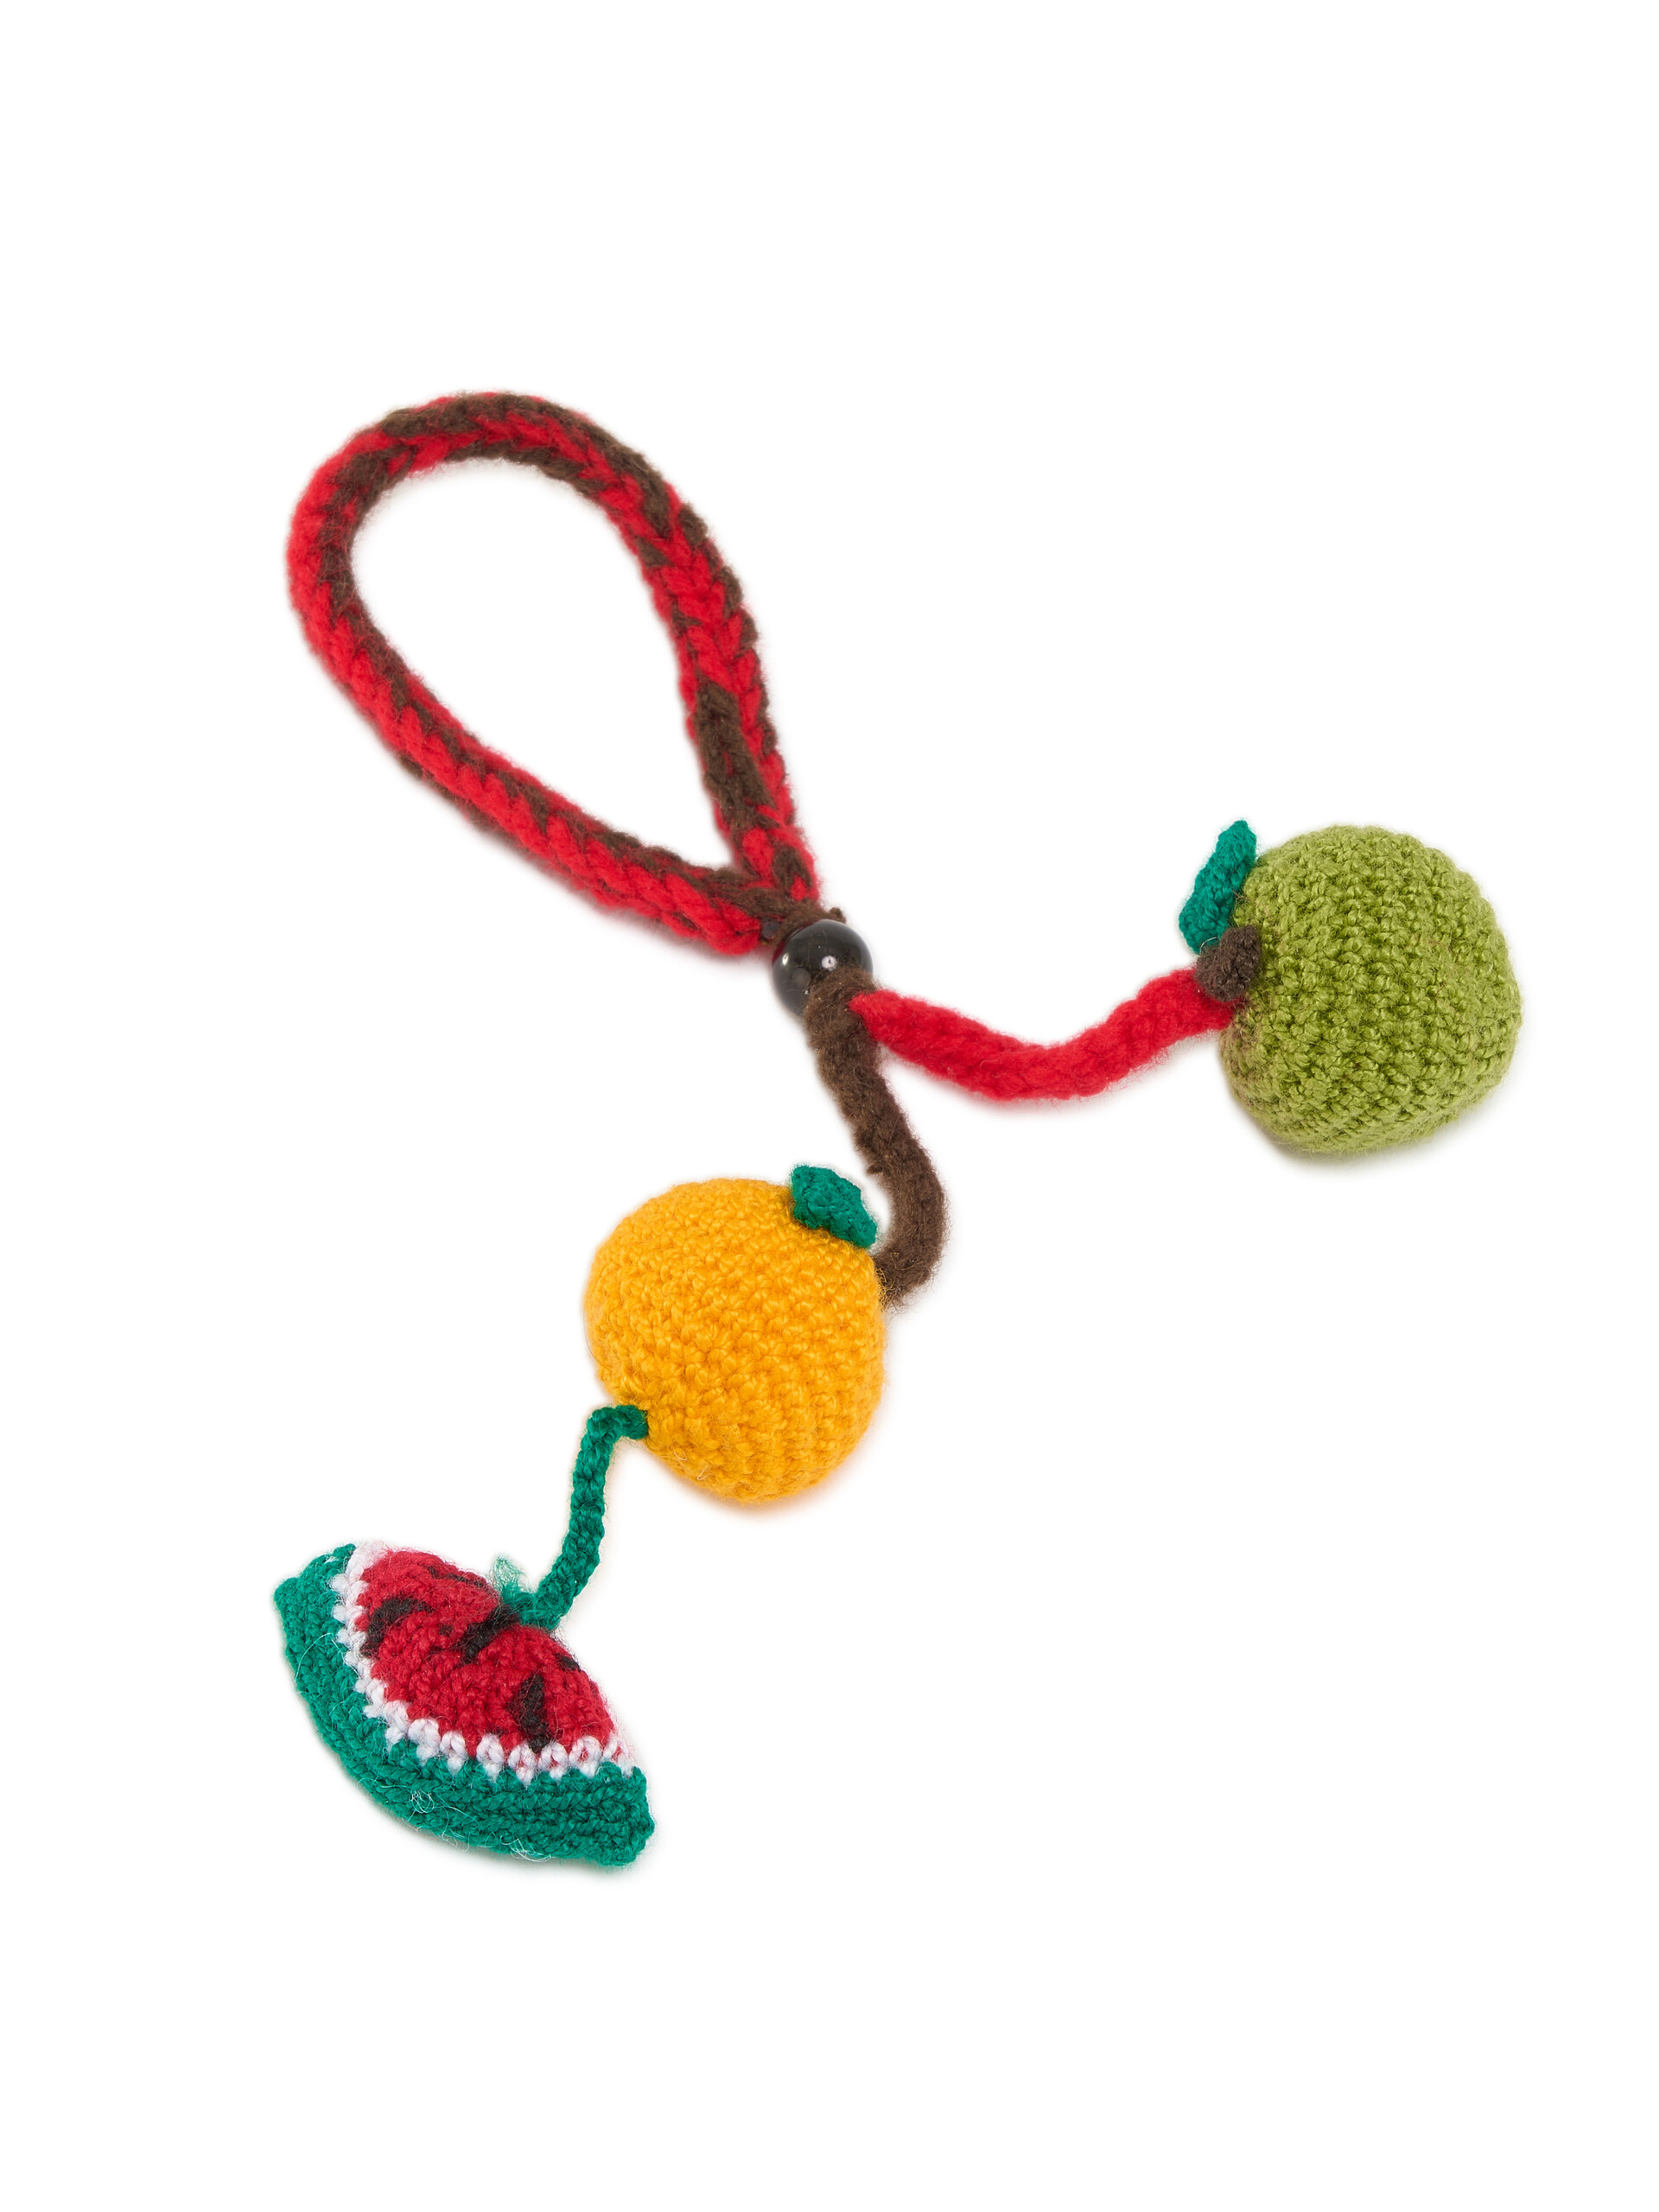 Watermelon Crochet Marni Market Pendant - Accessories - Image 3